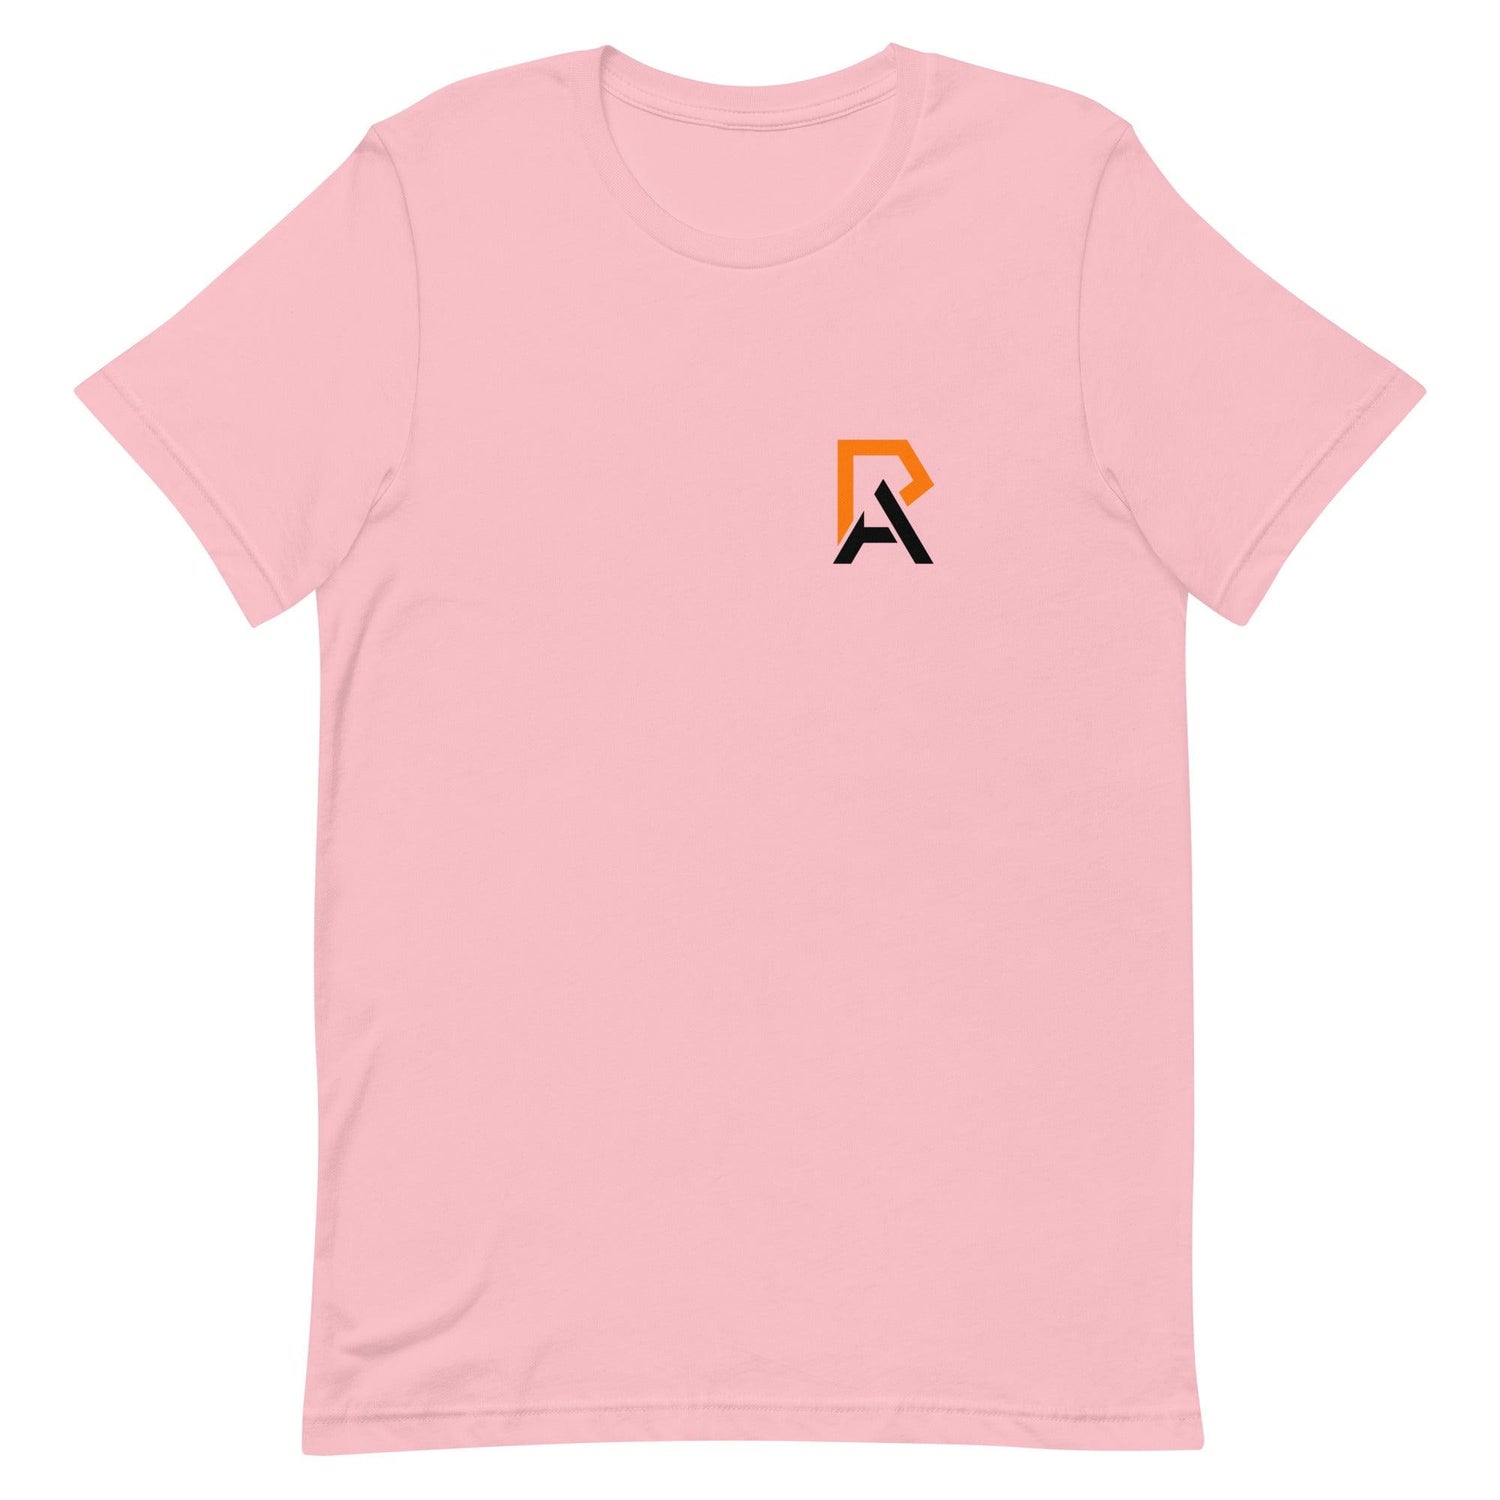 Andrea Riley "Elite" t-shirt - Fan Arch